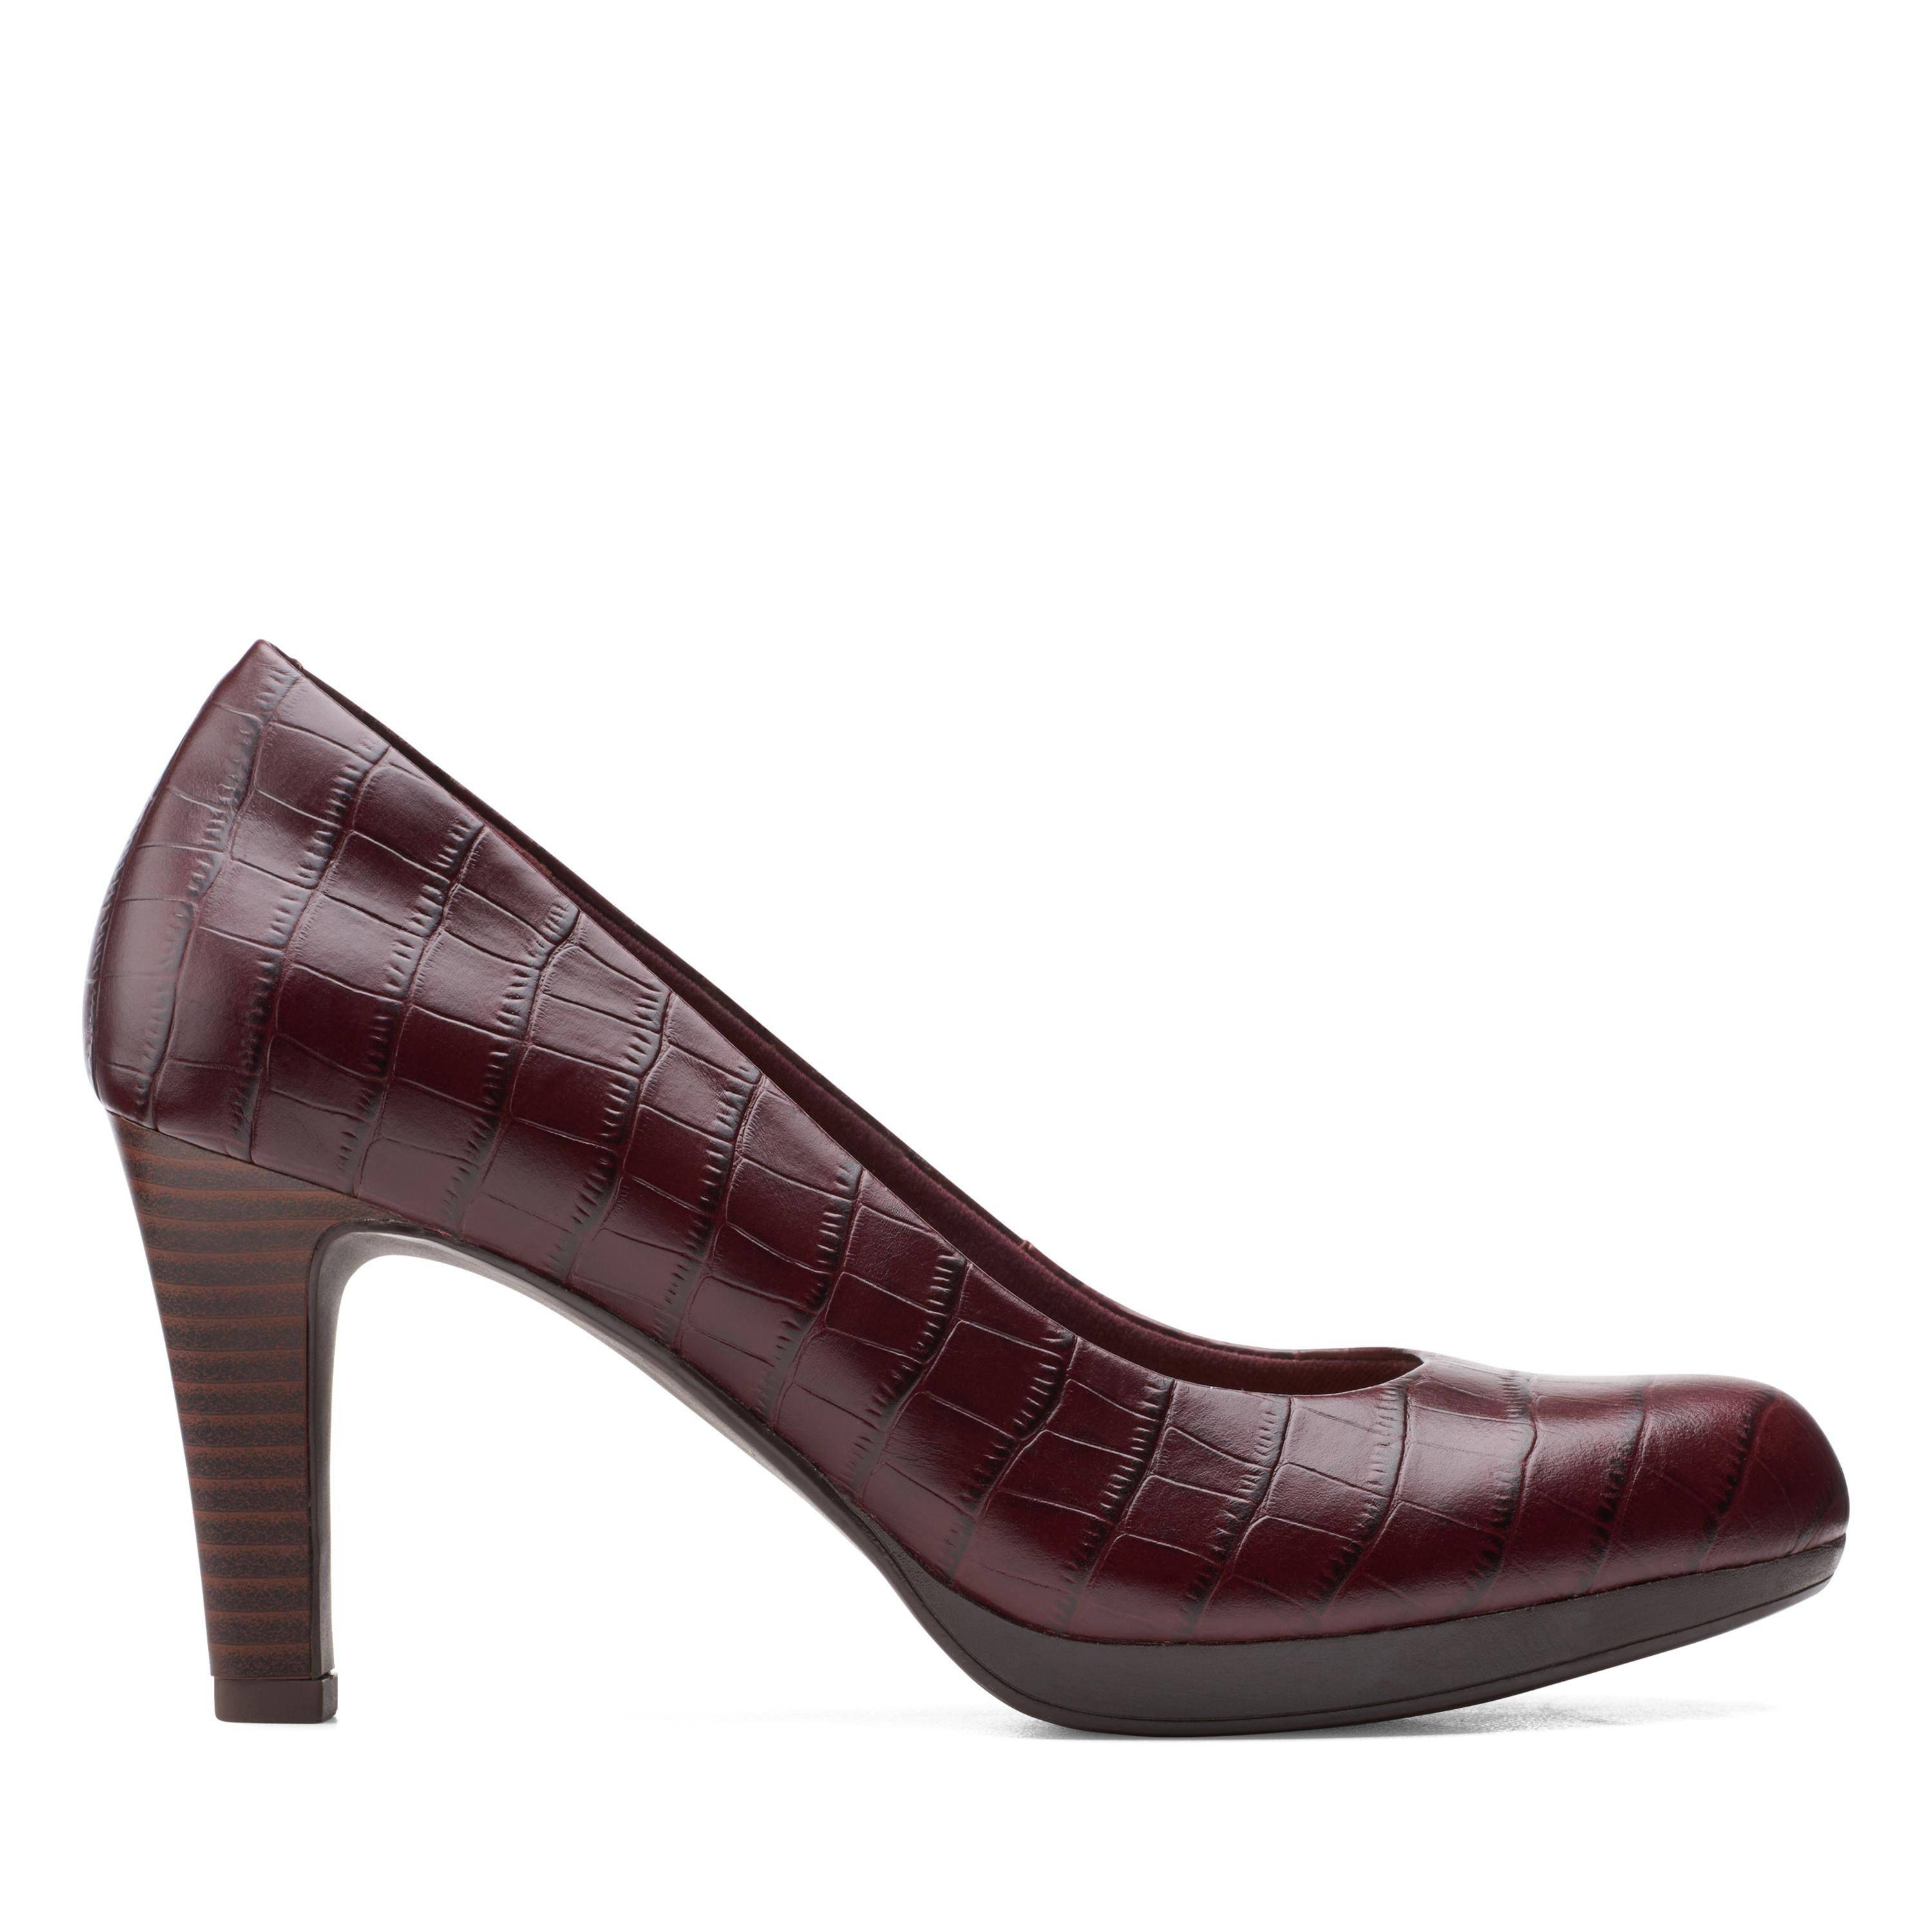 Женские туфли-лодочки Clarks(Adriel Viola 26151330), бордовые, цвет бордовый, размер 37.5 - фото 2